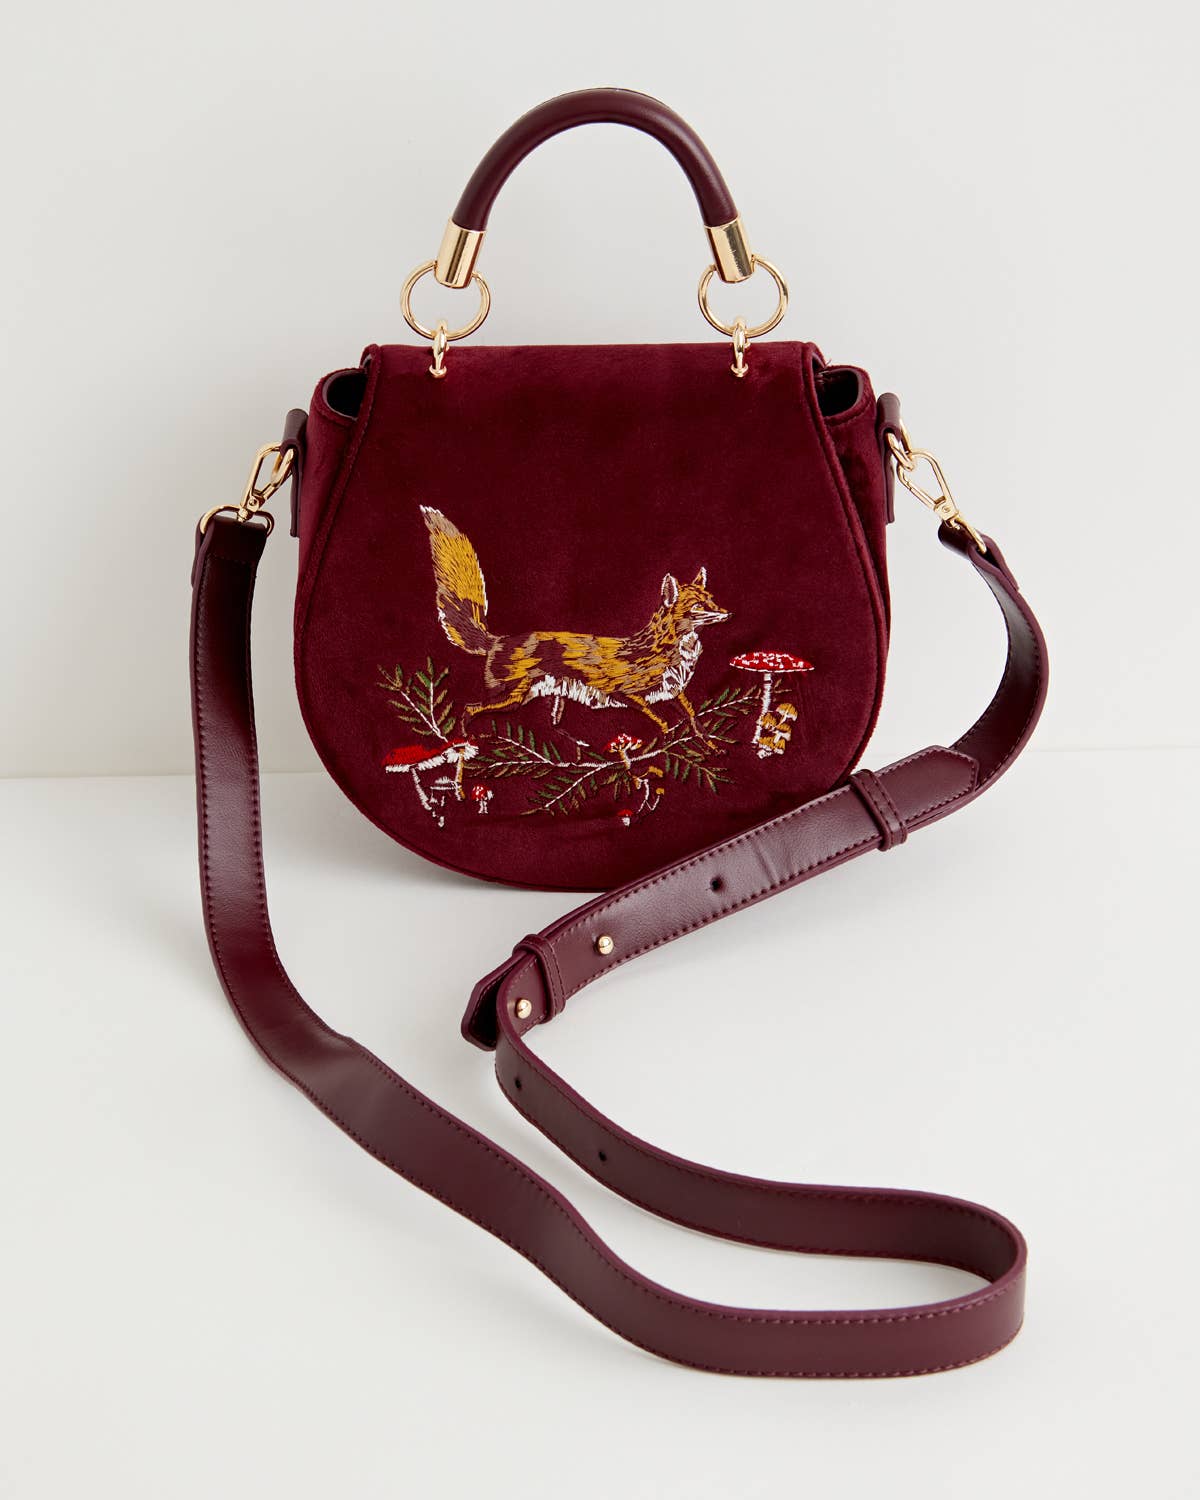 Fable Fox & Mushroom Embroidered Burgundy Velvet Saddle Bag